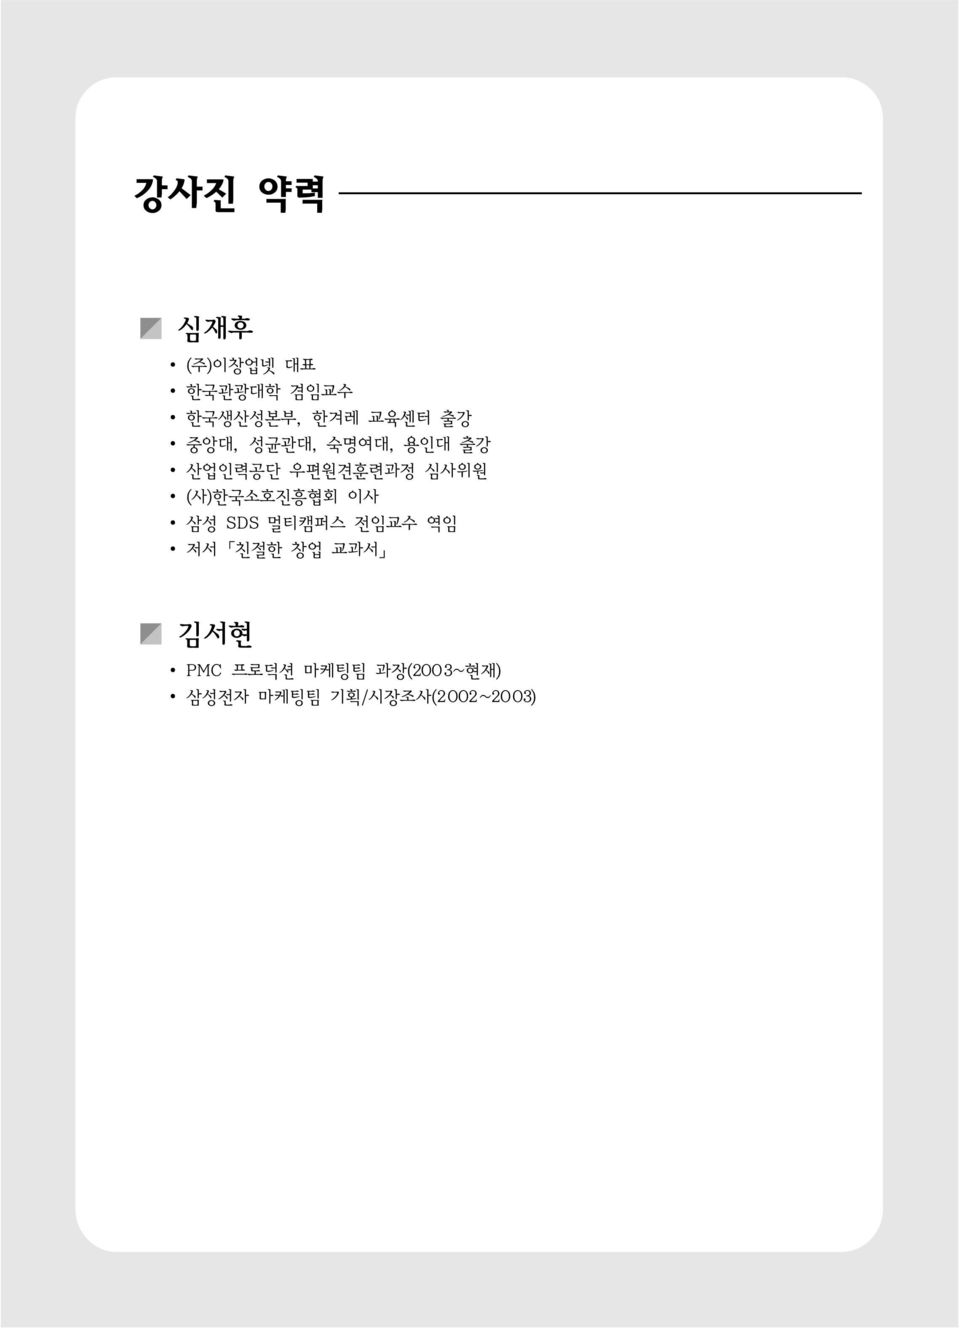 (사)한국소호진흥협회 이사 삼성 SDS 멀티캠퍼스 전임교수 역임 저서 친절한 창업 교과서